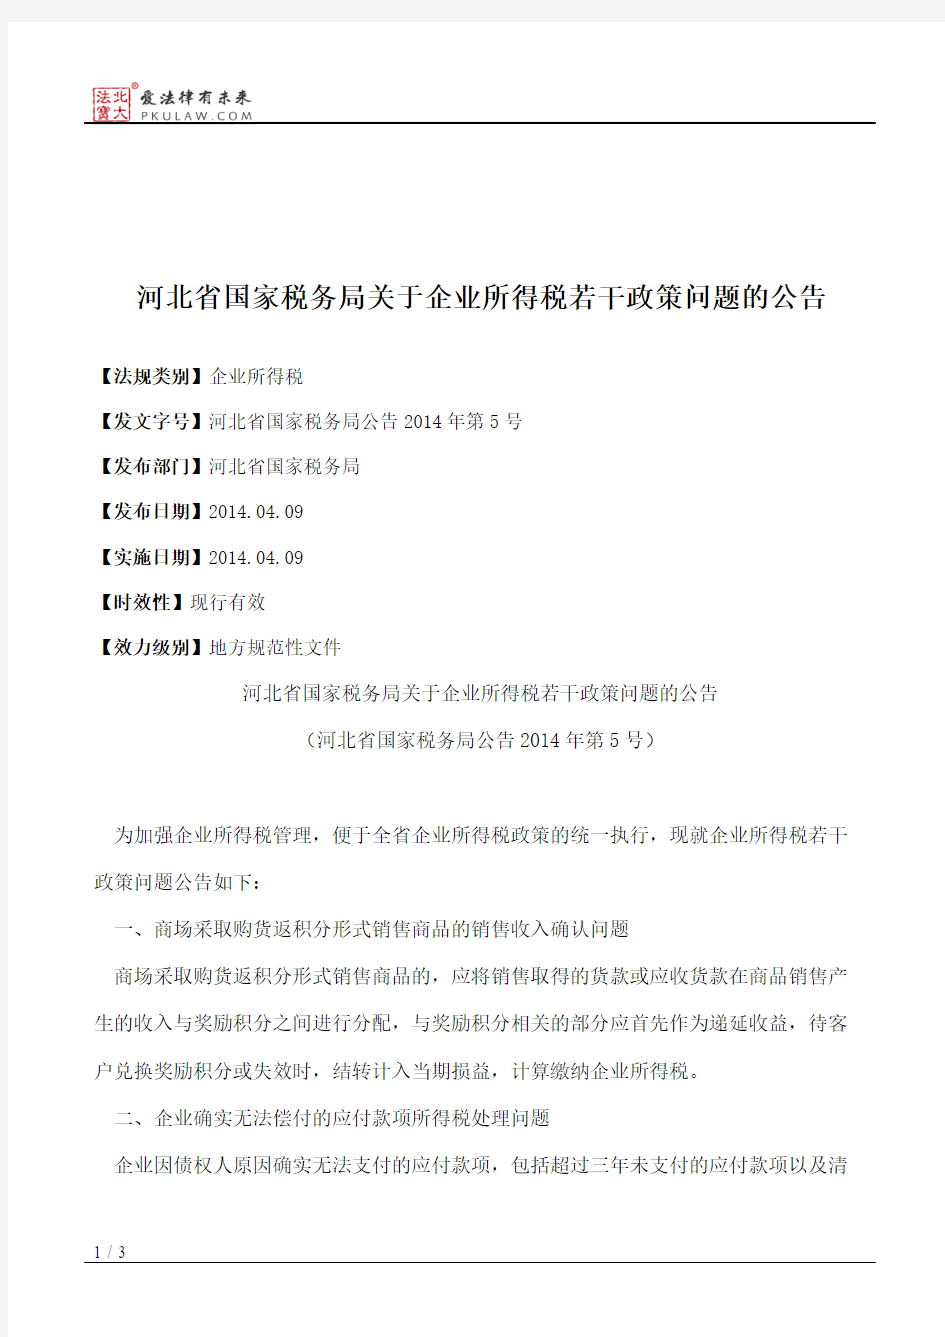 河北省国家税务局关于企业所得税若干政策问题的公告